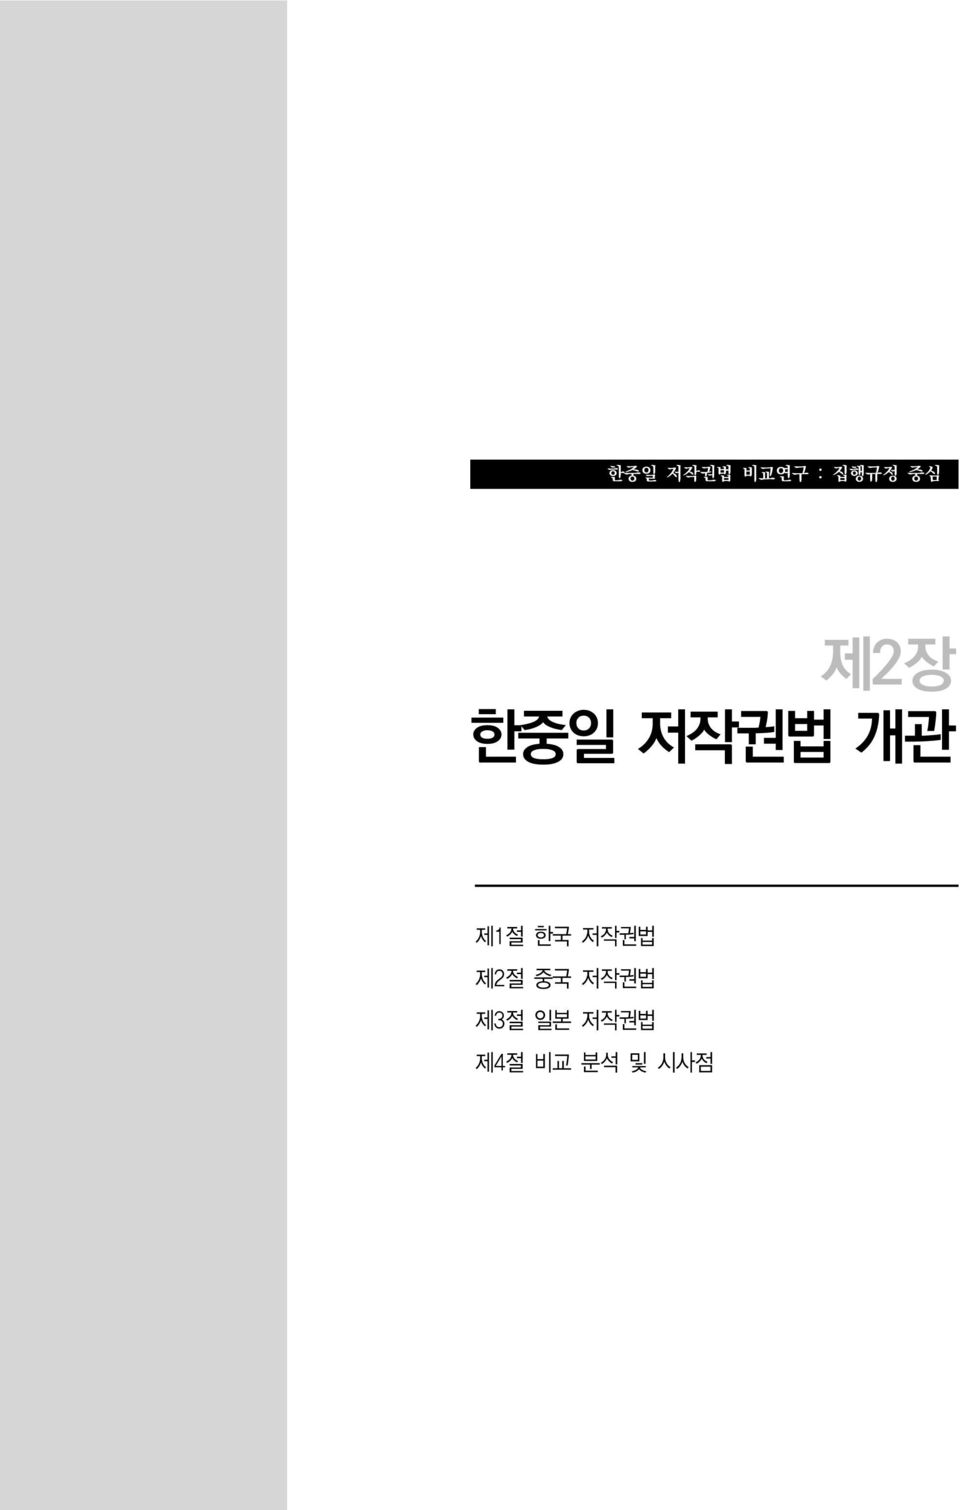 한국 저작권법 제2절 중국 저작권법